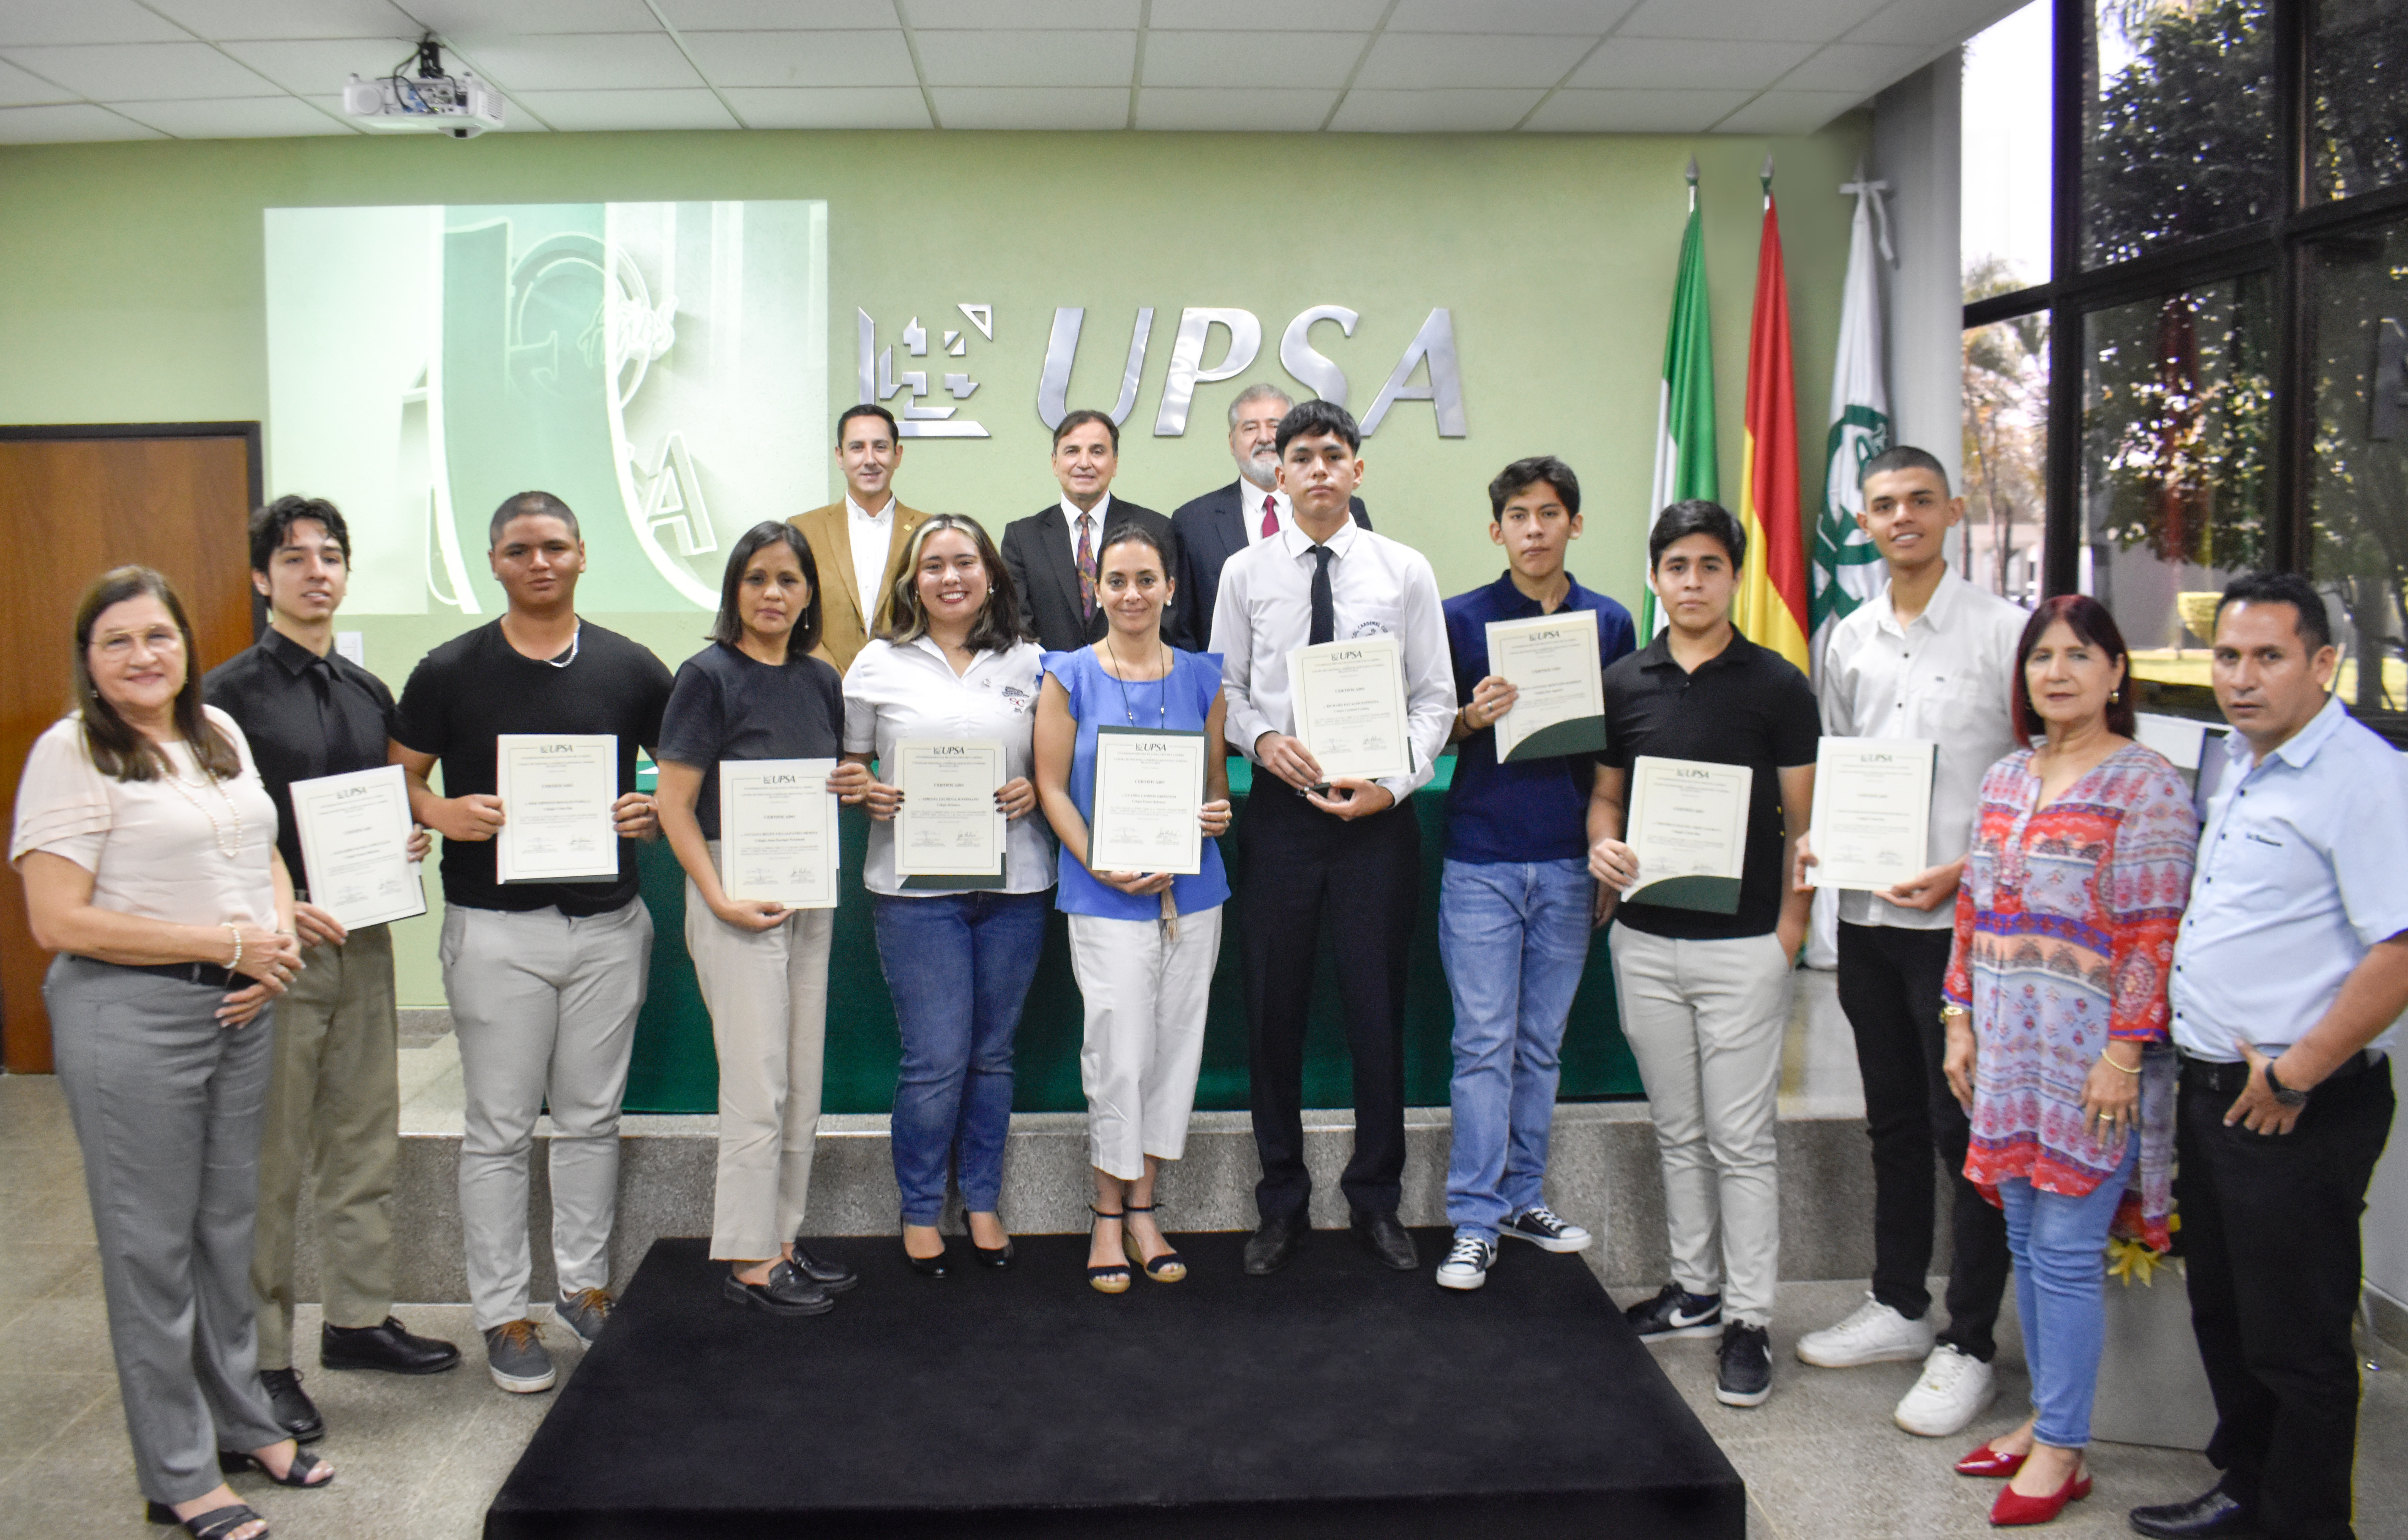 Concurso Nacional UPSA-CAINCO premian con becas a 10 bachilleres